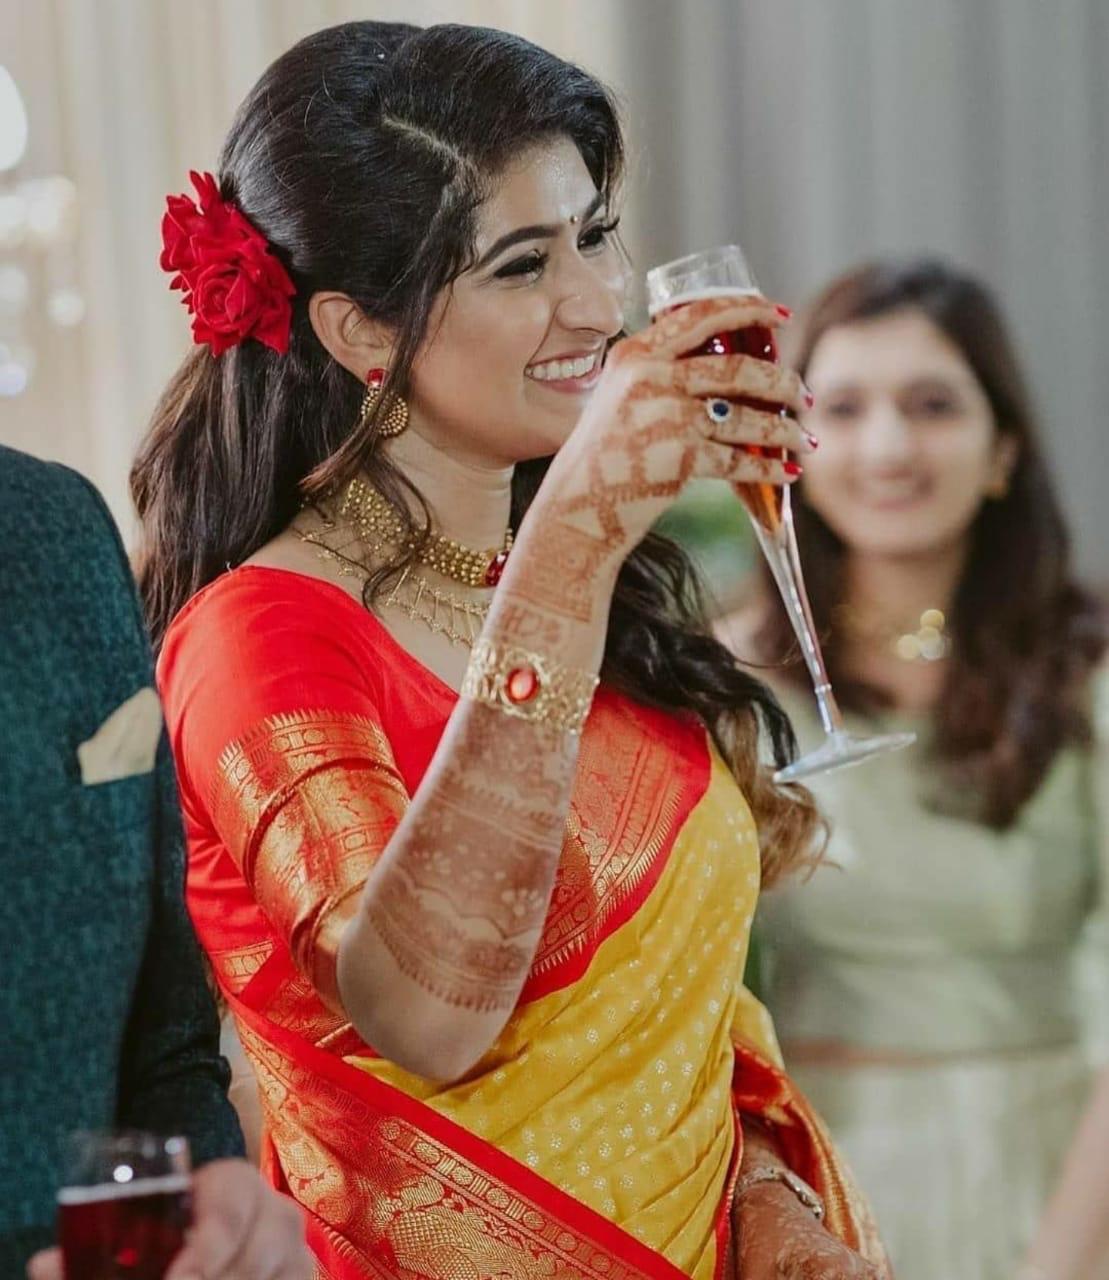 Wedding Hairstyle Ideas in Hindi|लंबे बालों के लिए बेस्ट हेयरस्टाइल|Simple  Wedding Hairstyles | silk saree wedding hairstyle ideas | HerZindagi